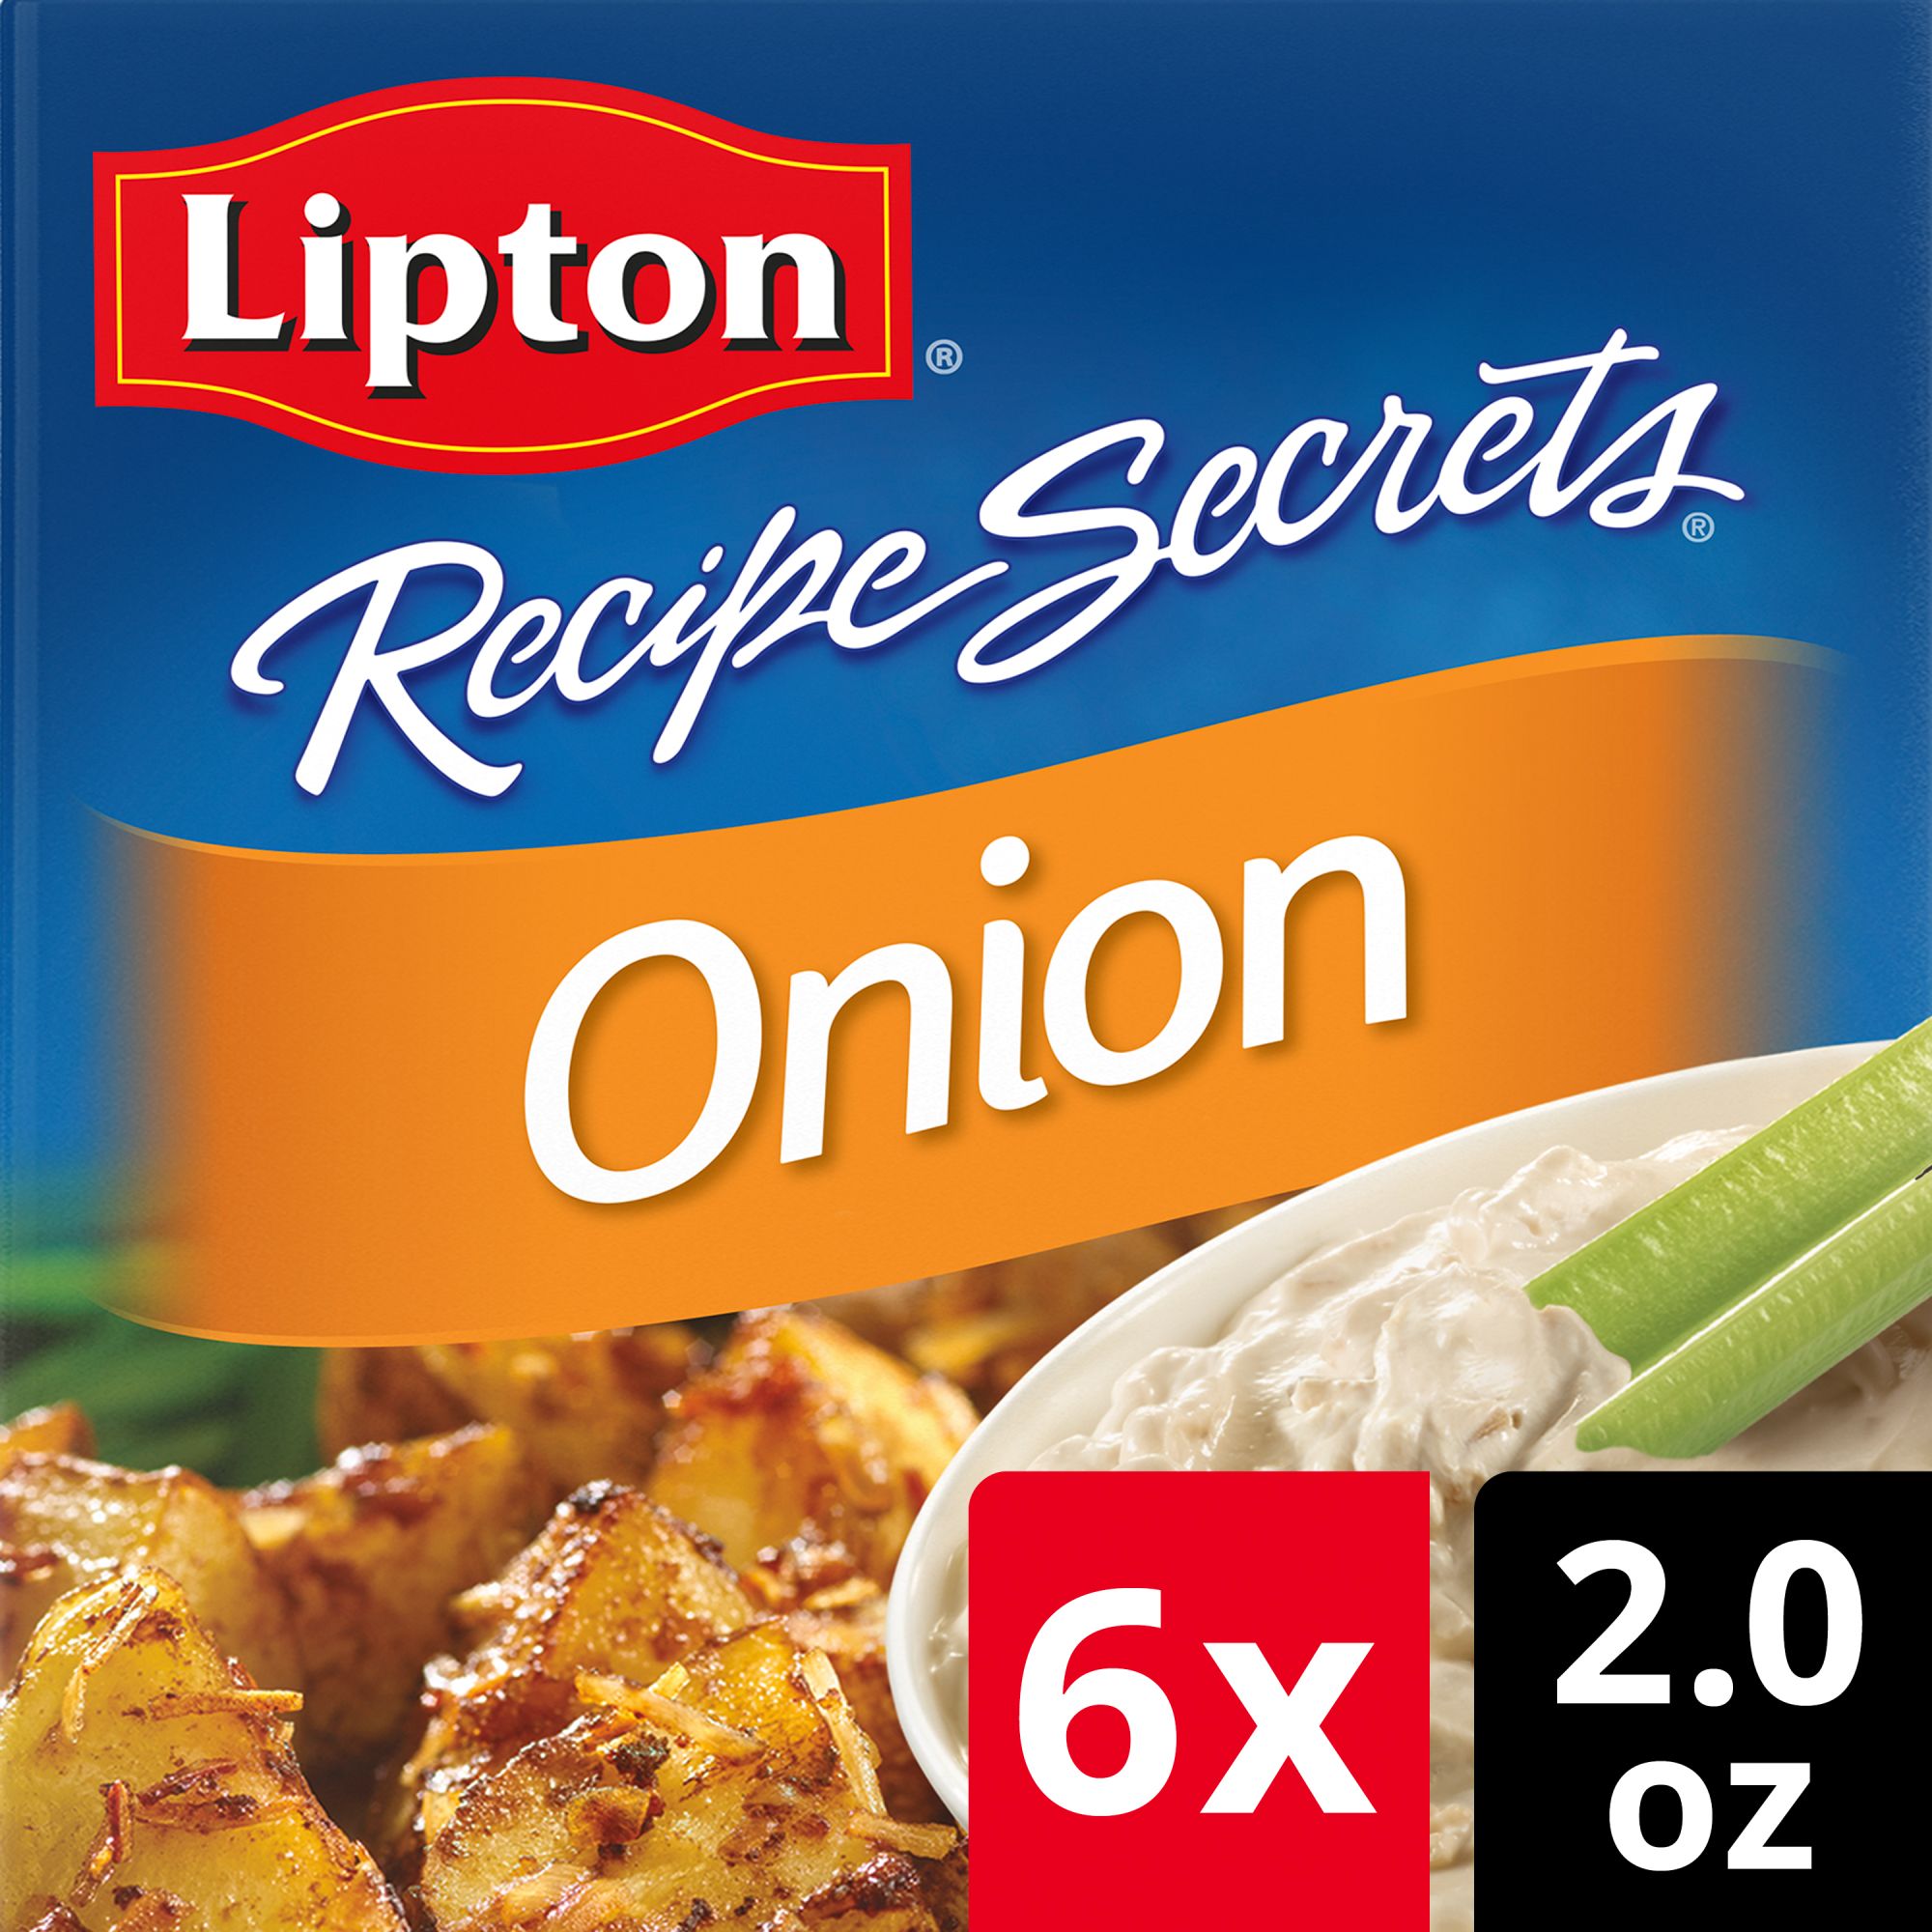 Lipton Recipe Secrets Onion Recipe Soup and Dip Mix